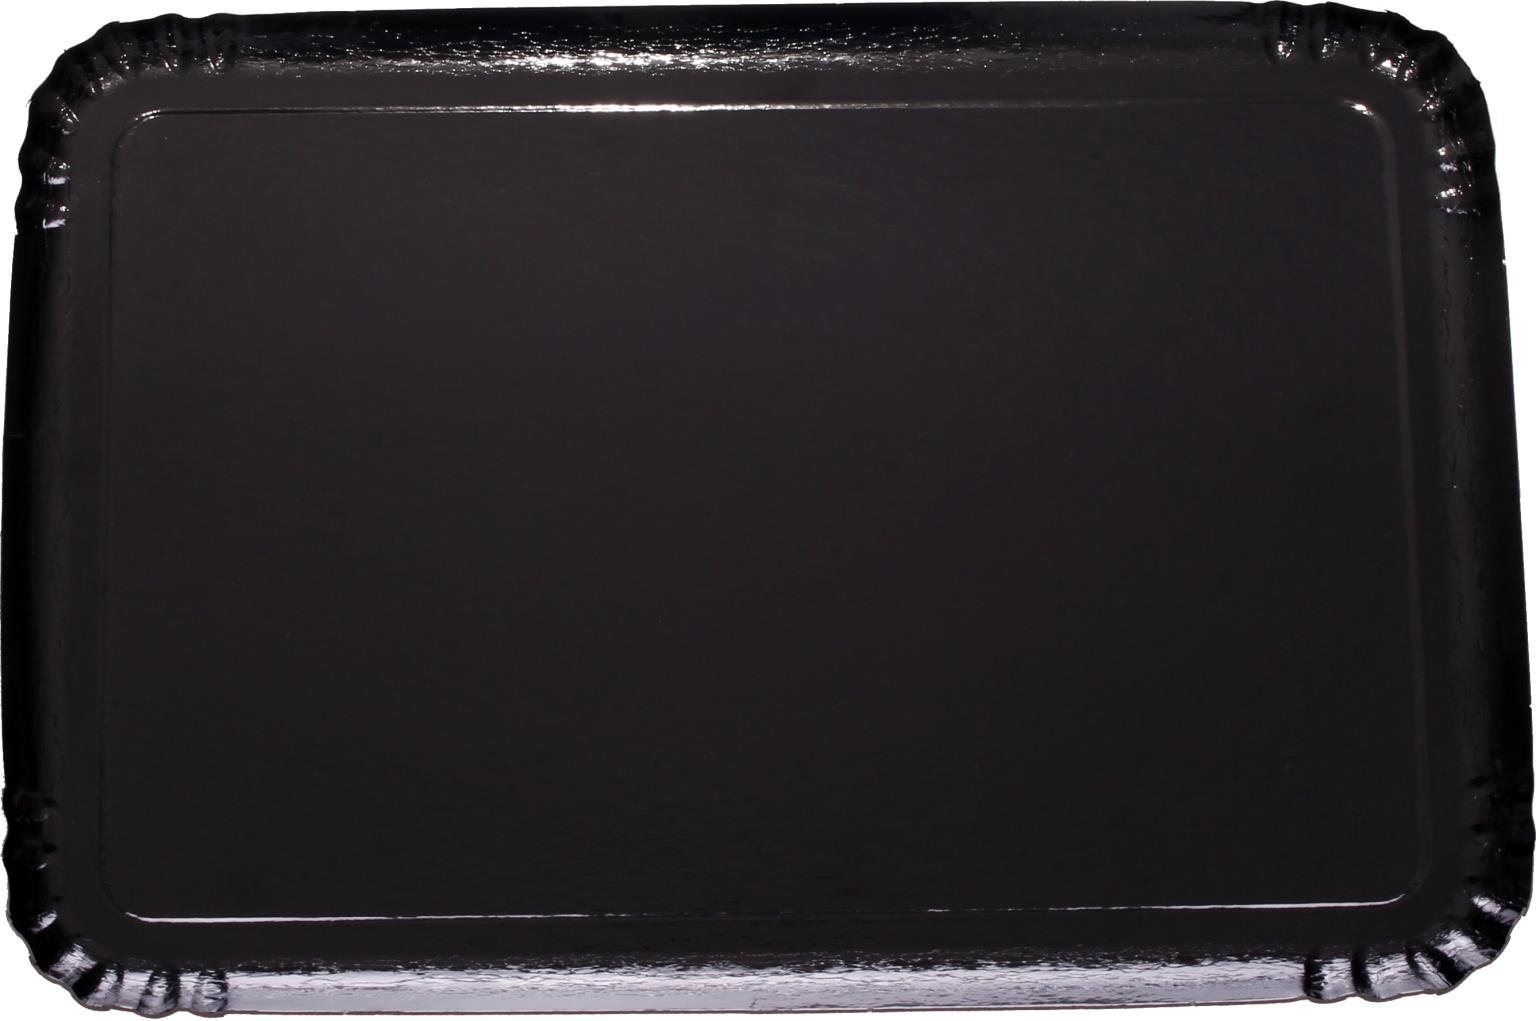 SERVIERPLATTEN SCHWARZ  14 x 19 cm eckig, schwarz